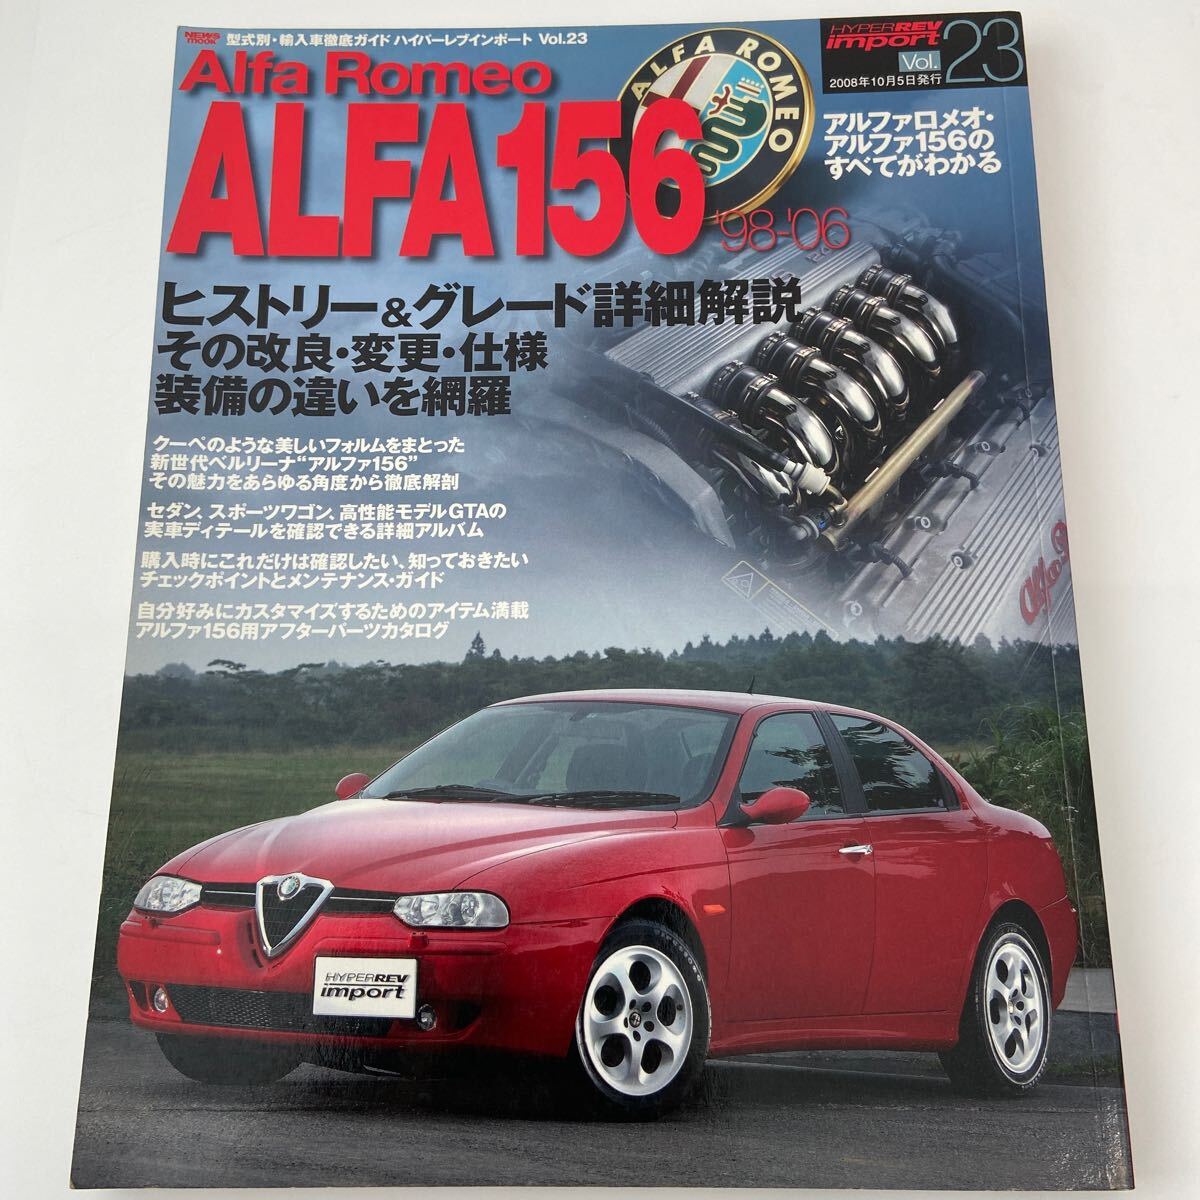  Hyper Rev импортированный автомобиль ALFA ROMEO 156 Alpha Romeo Alpha 156. все . понимать книга@GTA Sports Wagon техническое обслуживание 